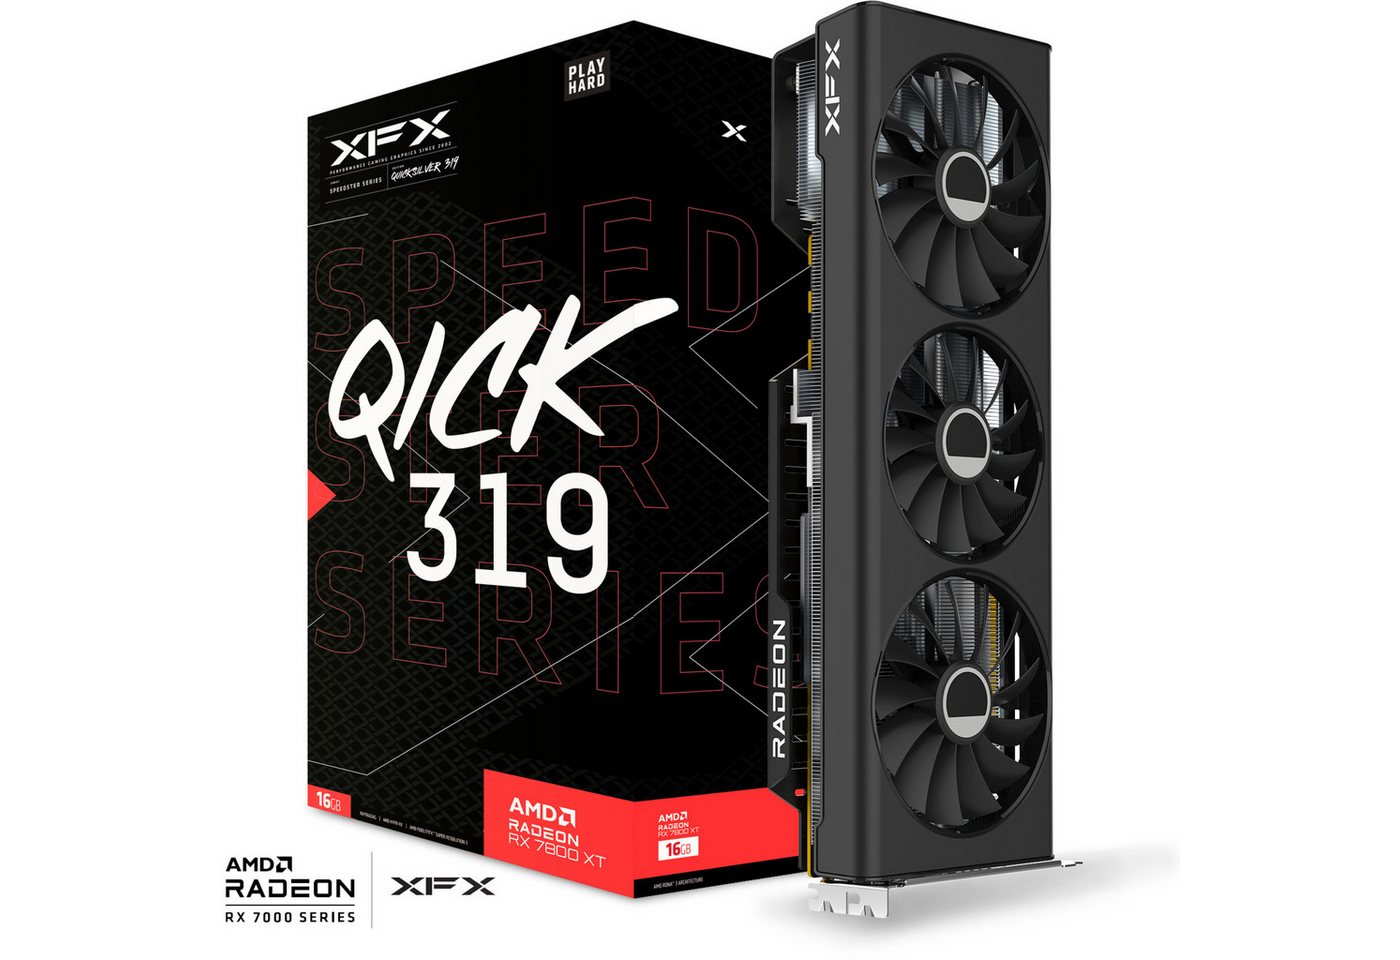 XFX Radeon RX 7800 XT SPEEDSTER QICK319 CORE Gaming Grafikkarte (16 GB) von XFX